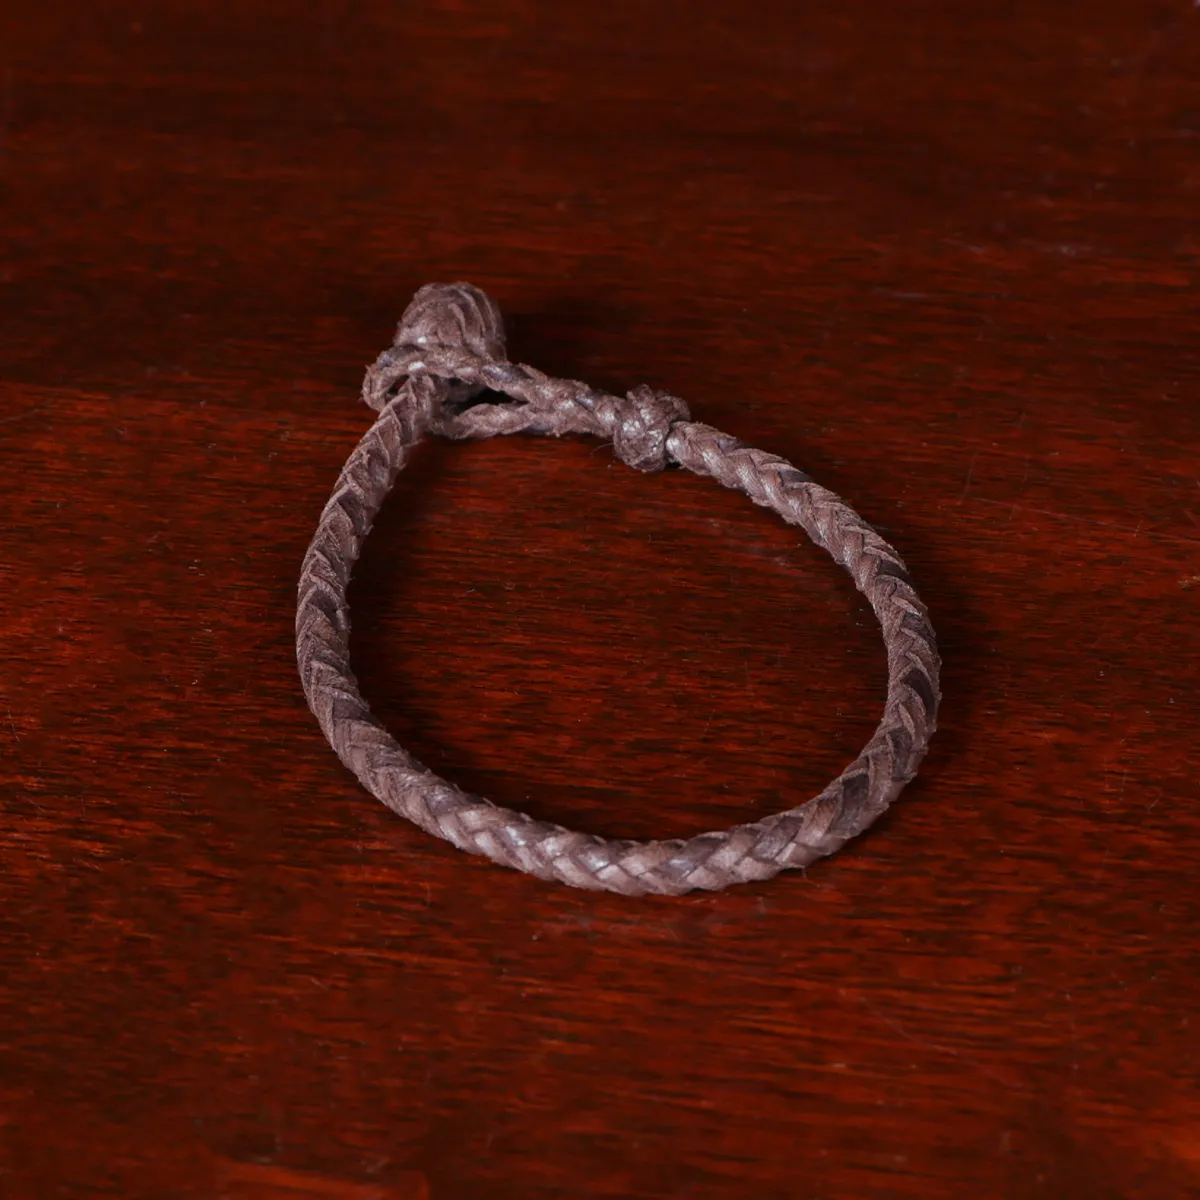 Steel Knot Leather Loop Bracelet Brown